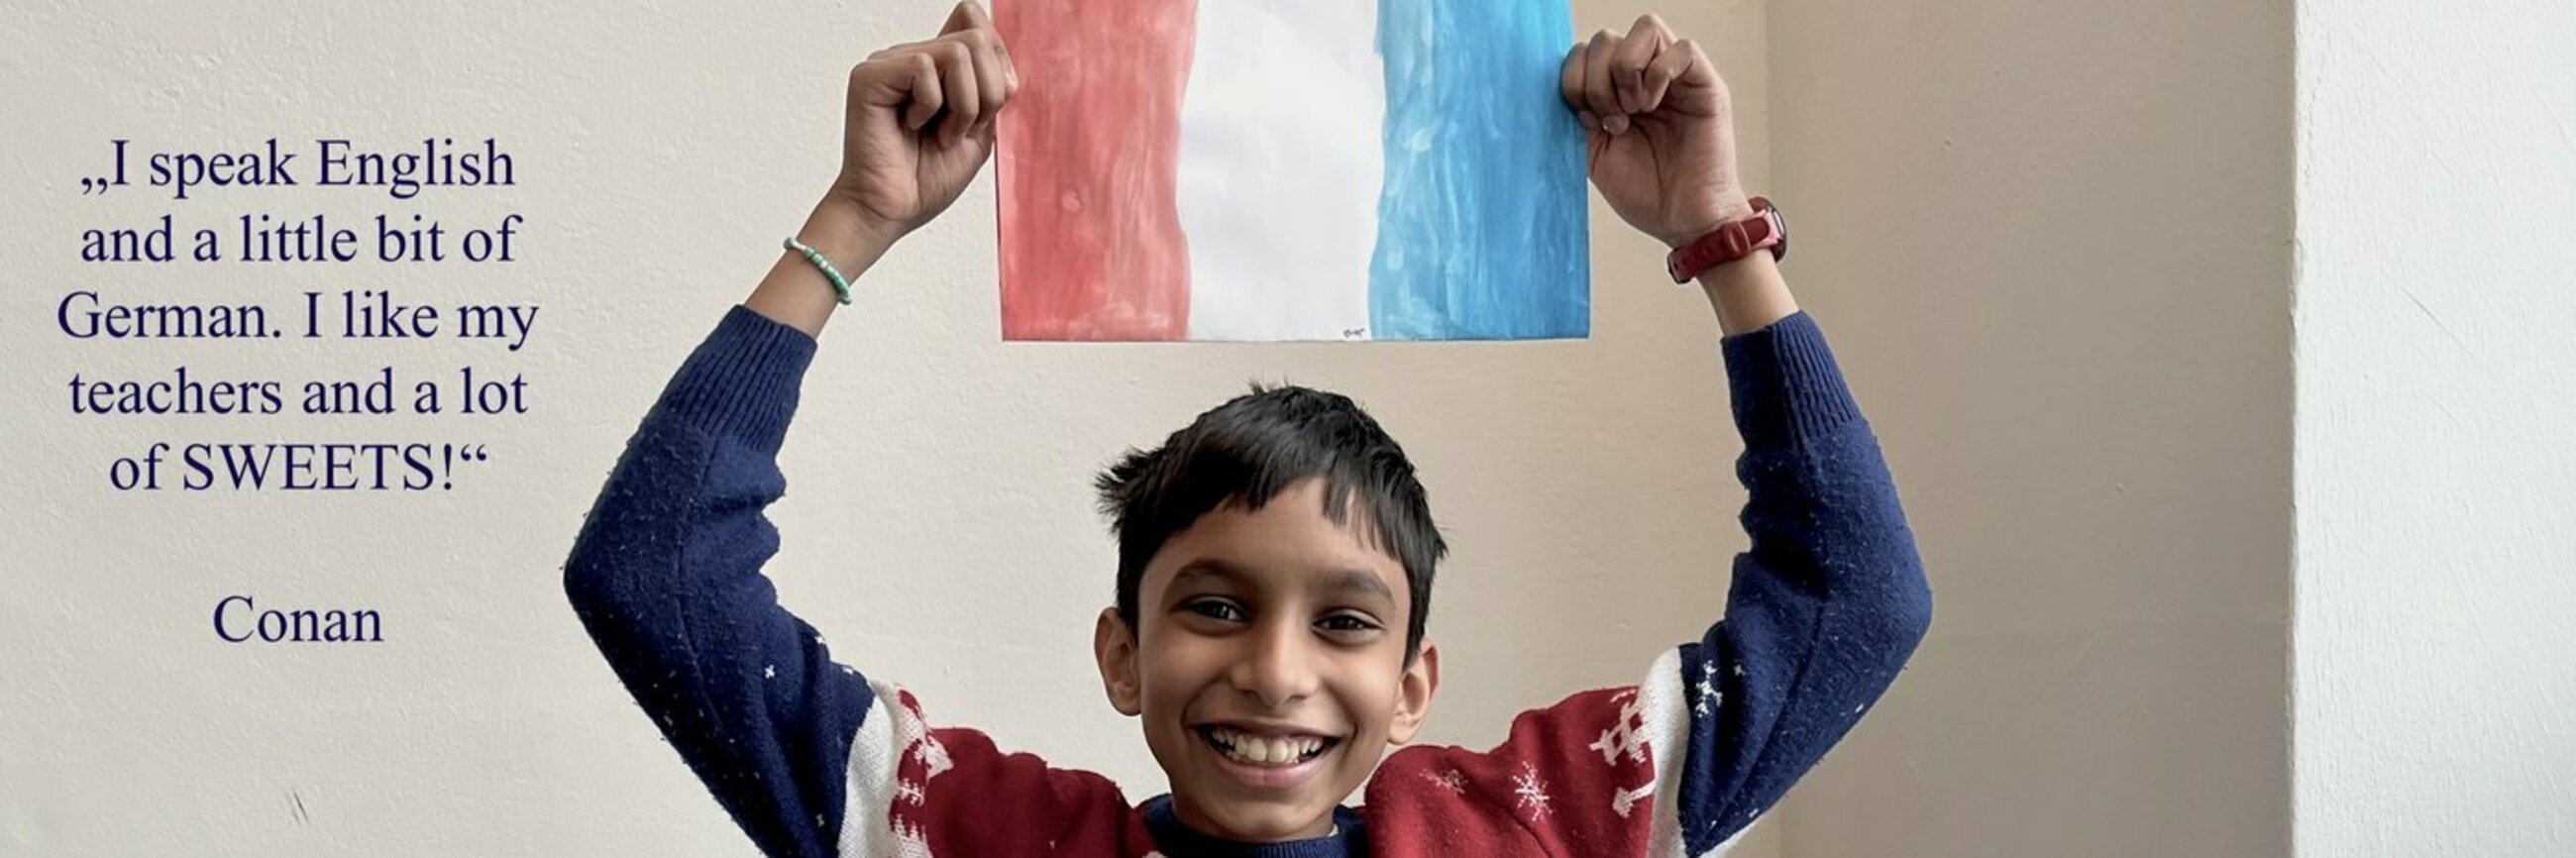 Ein Junge lacht und hält eine französische Flagge in den Händen.